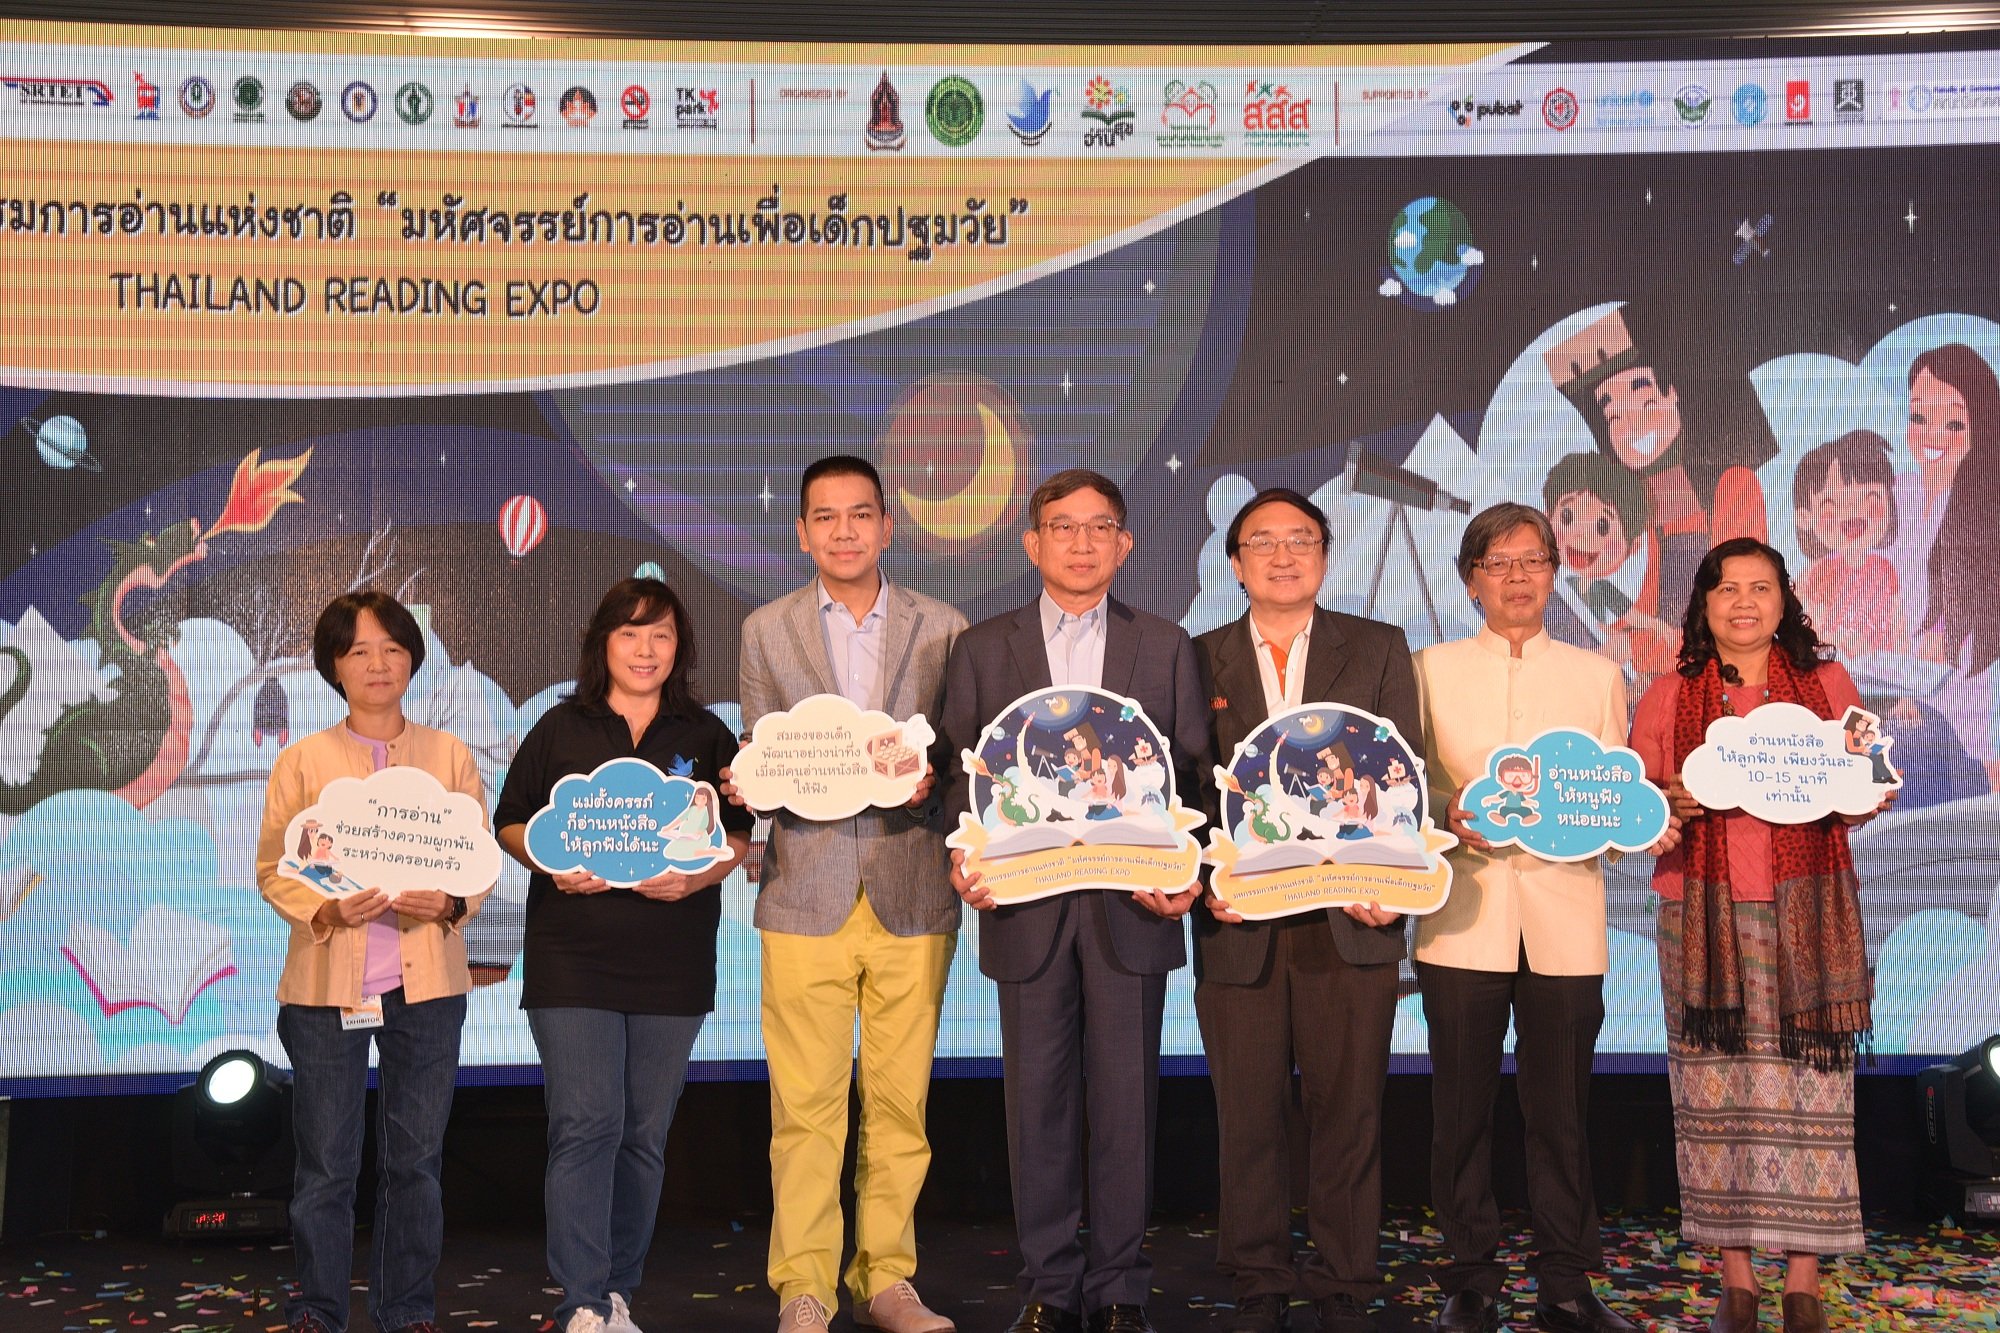 ส่งเสริมการอ่านเด็กปฐมวัย ปลุกพลังพลเมืองให้ตื่นรู้ thaihealth